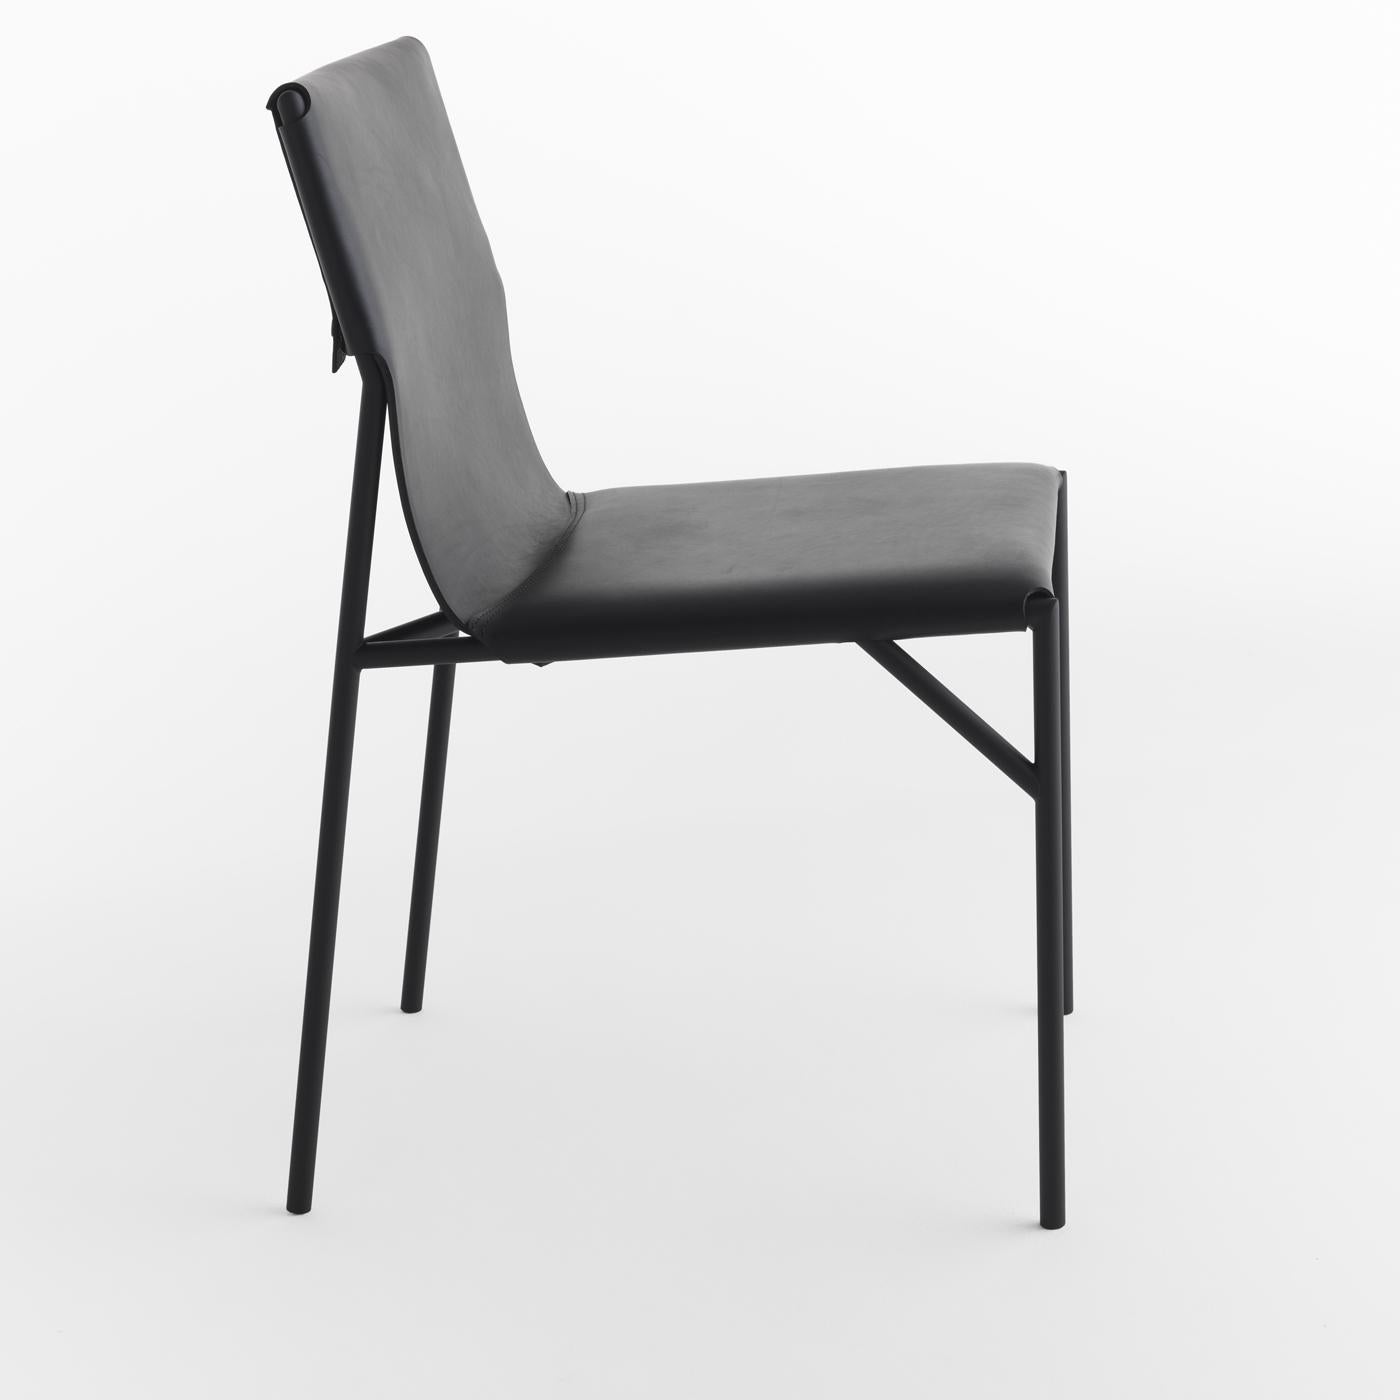 Conçue par March Thorpe pour la collection Tout Le Jour, cette superbe chaise est un élément de décoration fonctionnel, moderne et élégant. Reposant sur une structure métallique mince et minimaliste finie en noir mat, l'assise et le dossier